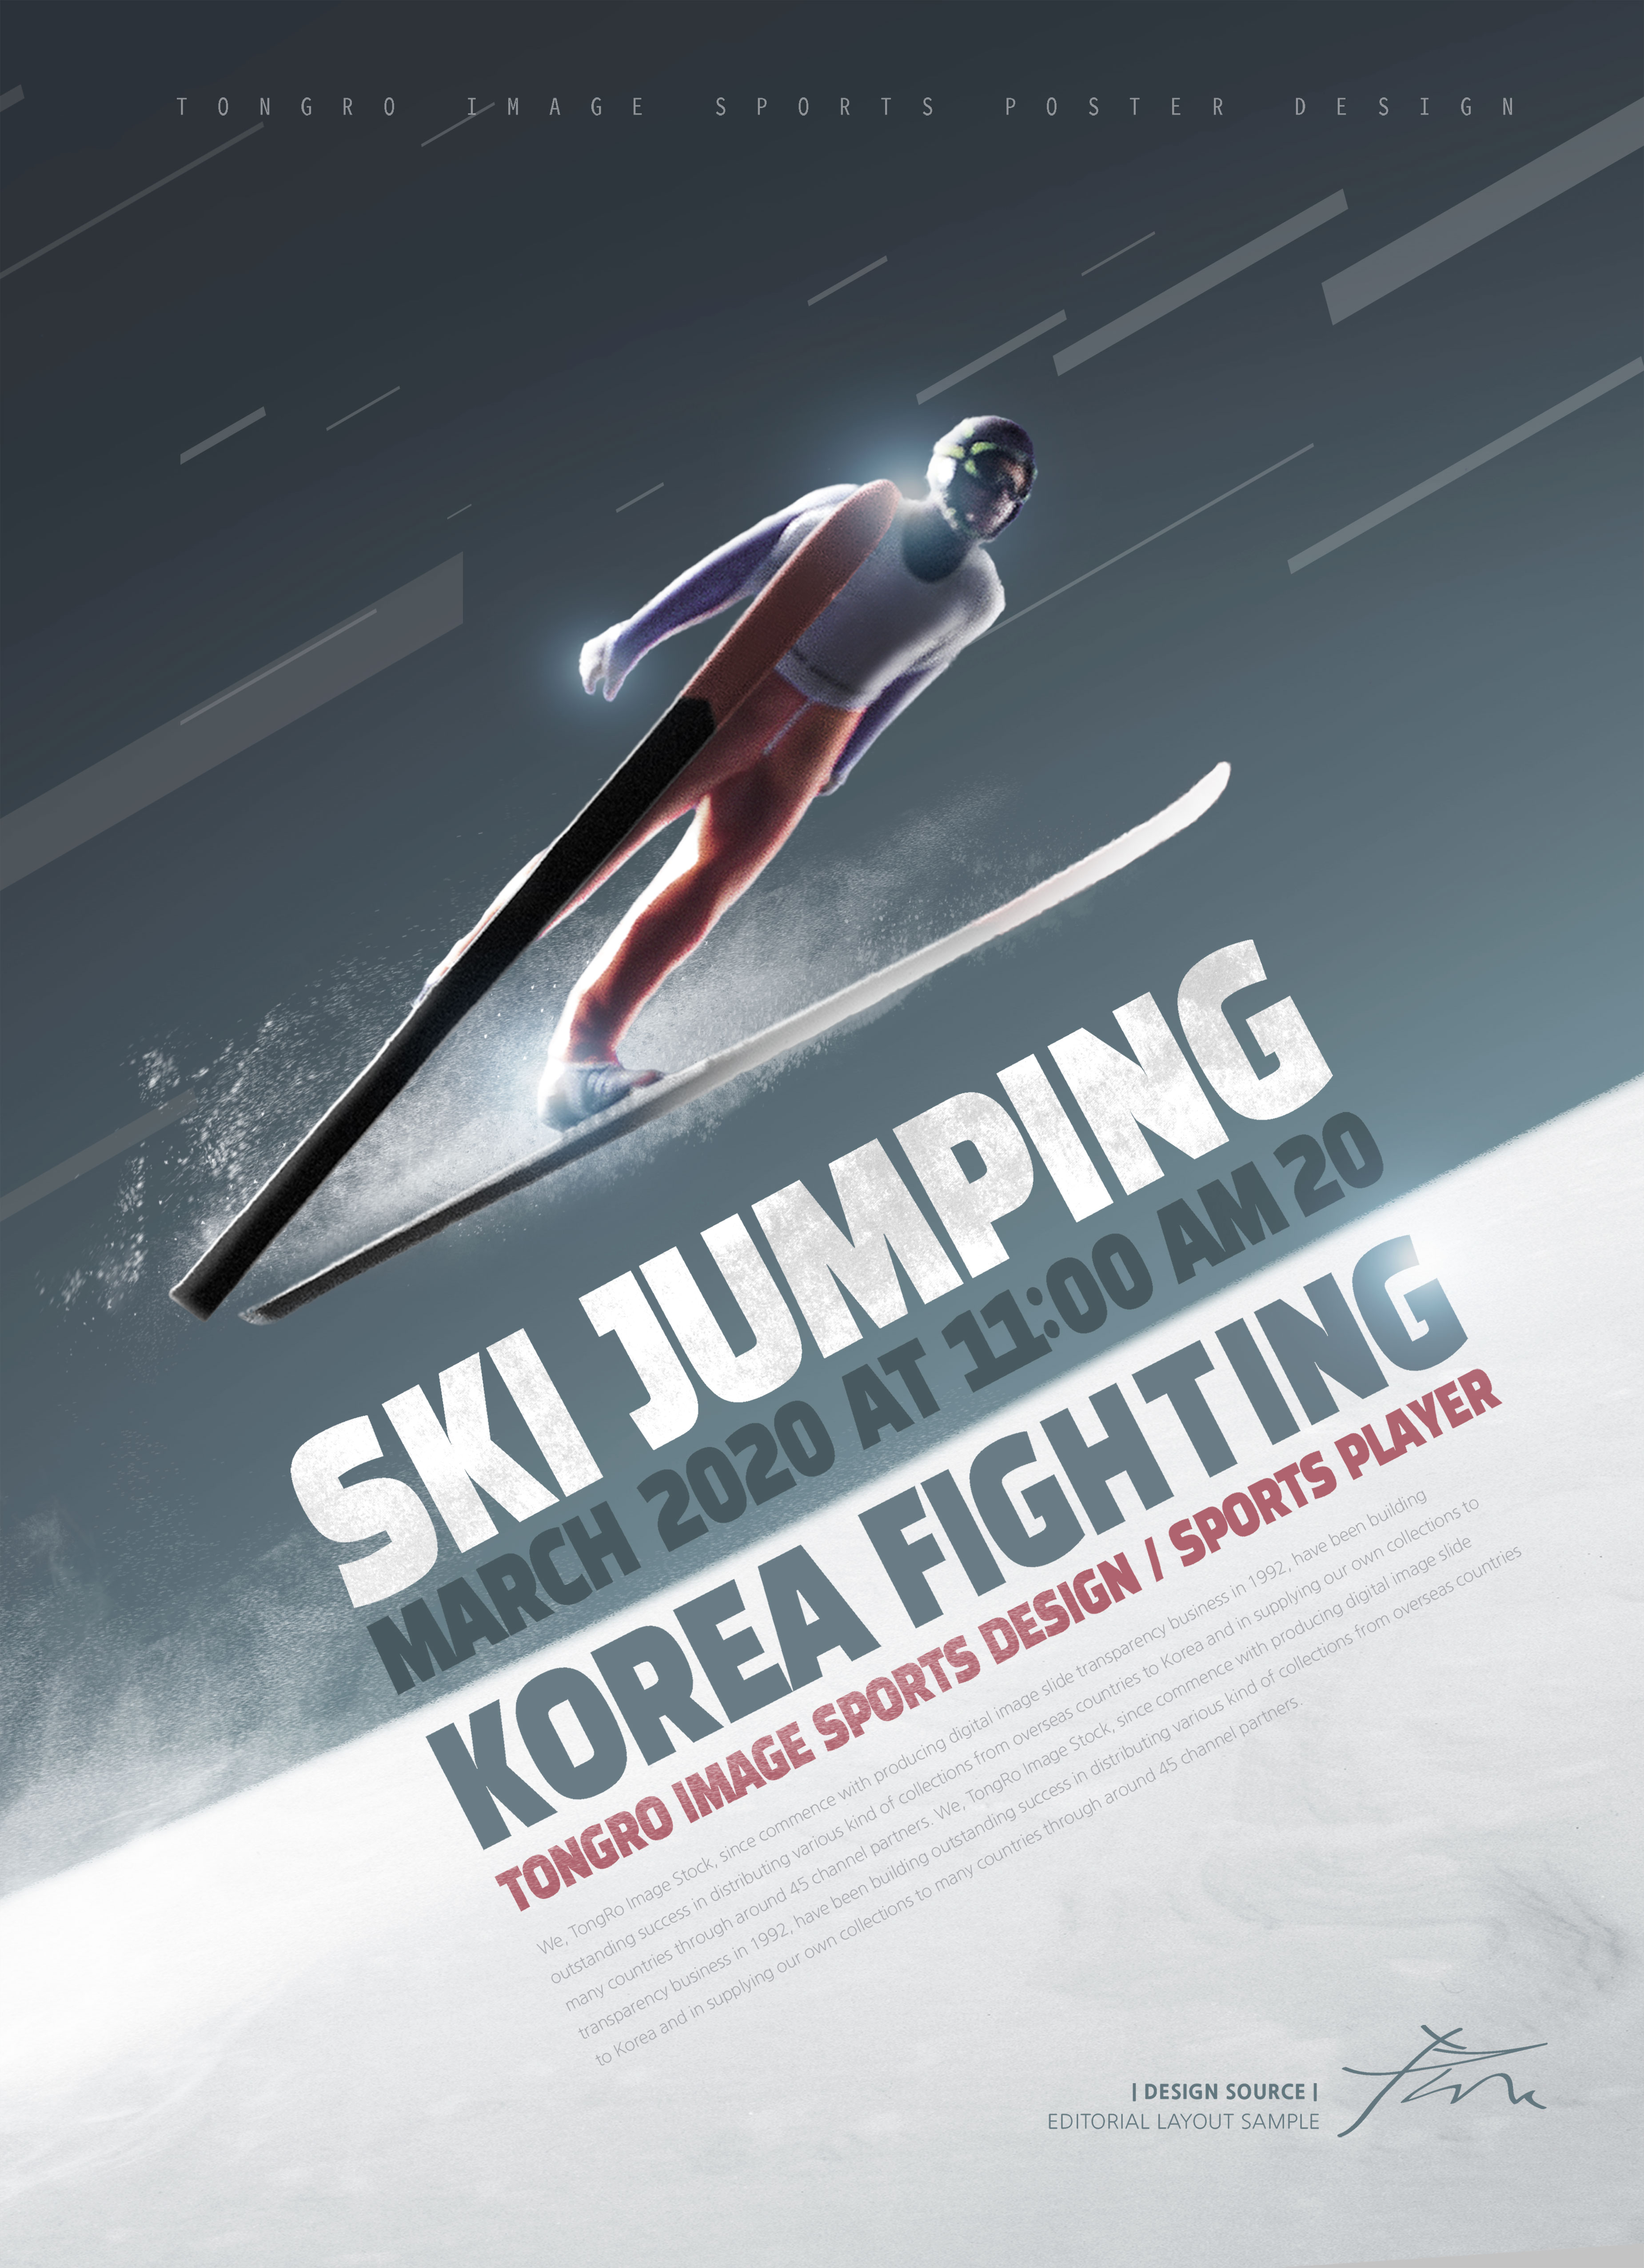 跳台滑雪体育运动宣传海报PSD素材素材库精选[PSD]插图